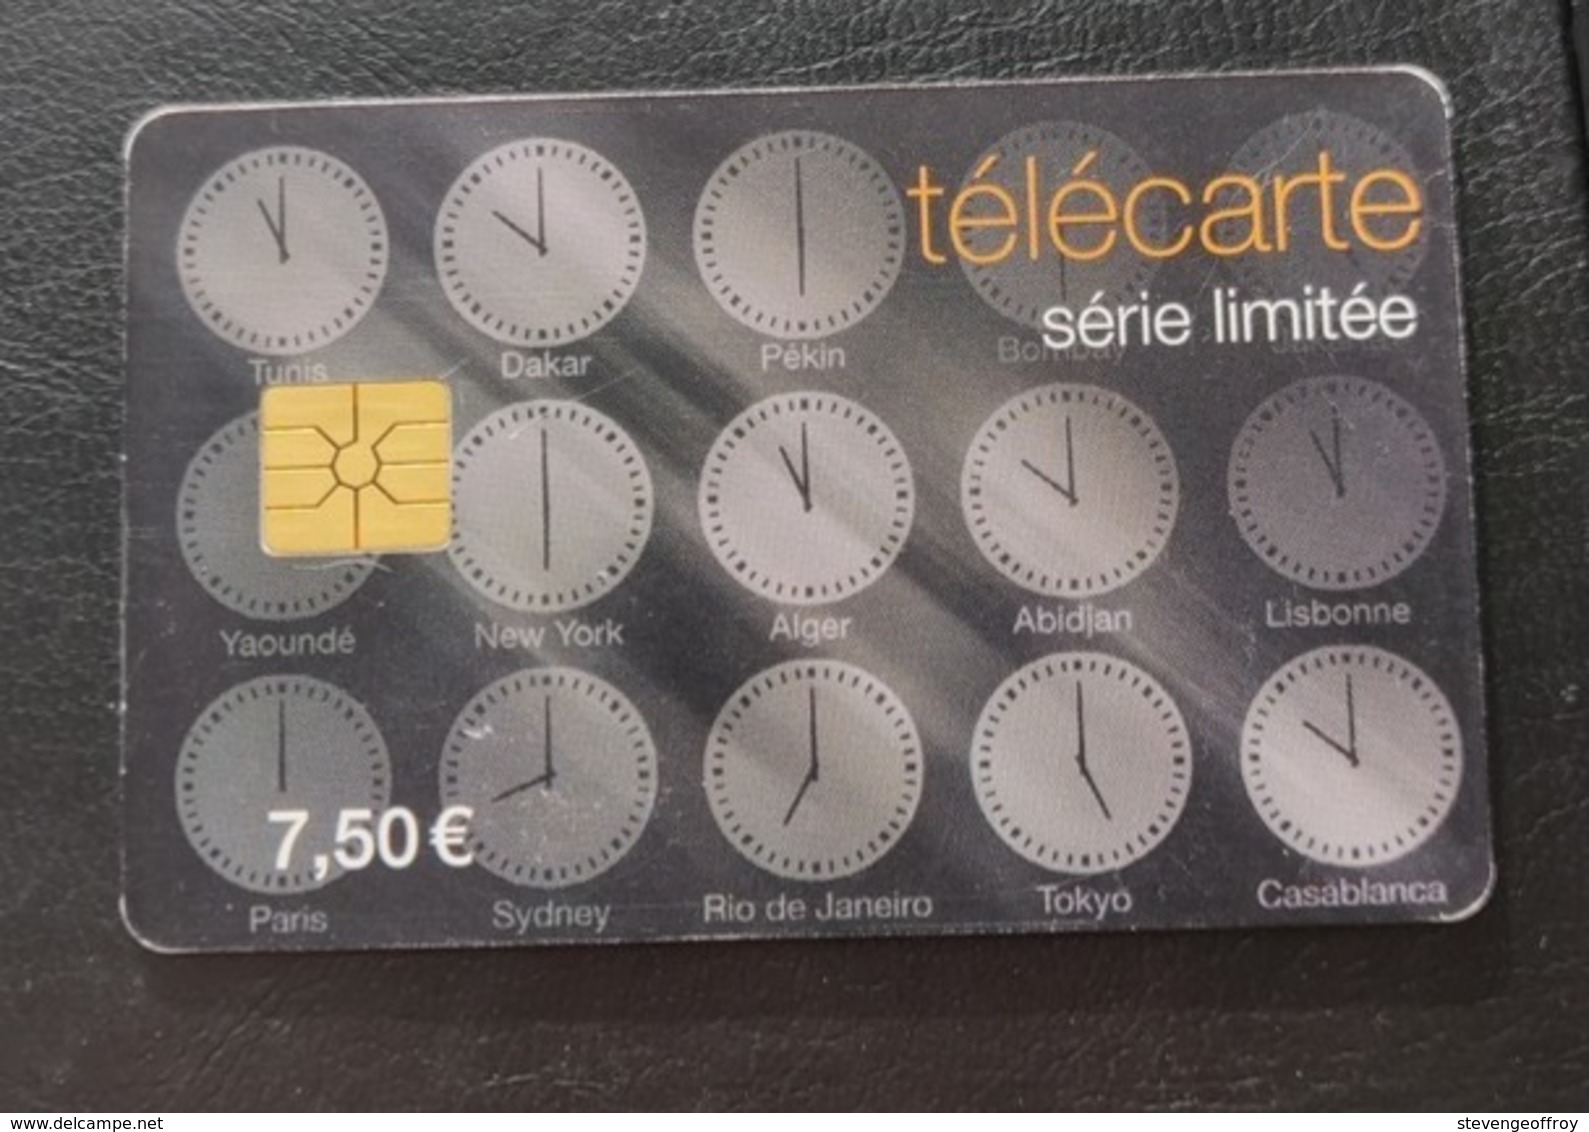 Telecarte France Publique 2010 Horloges - 2010